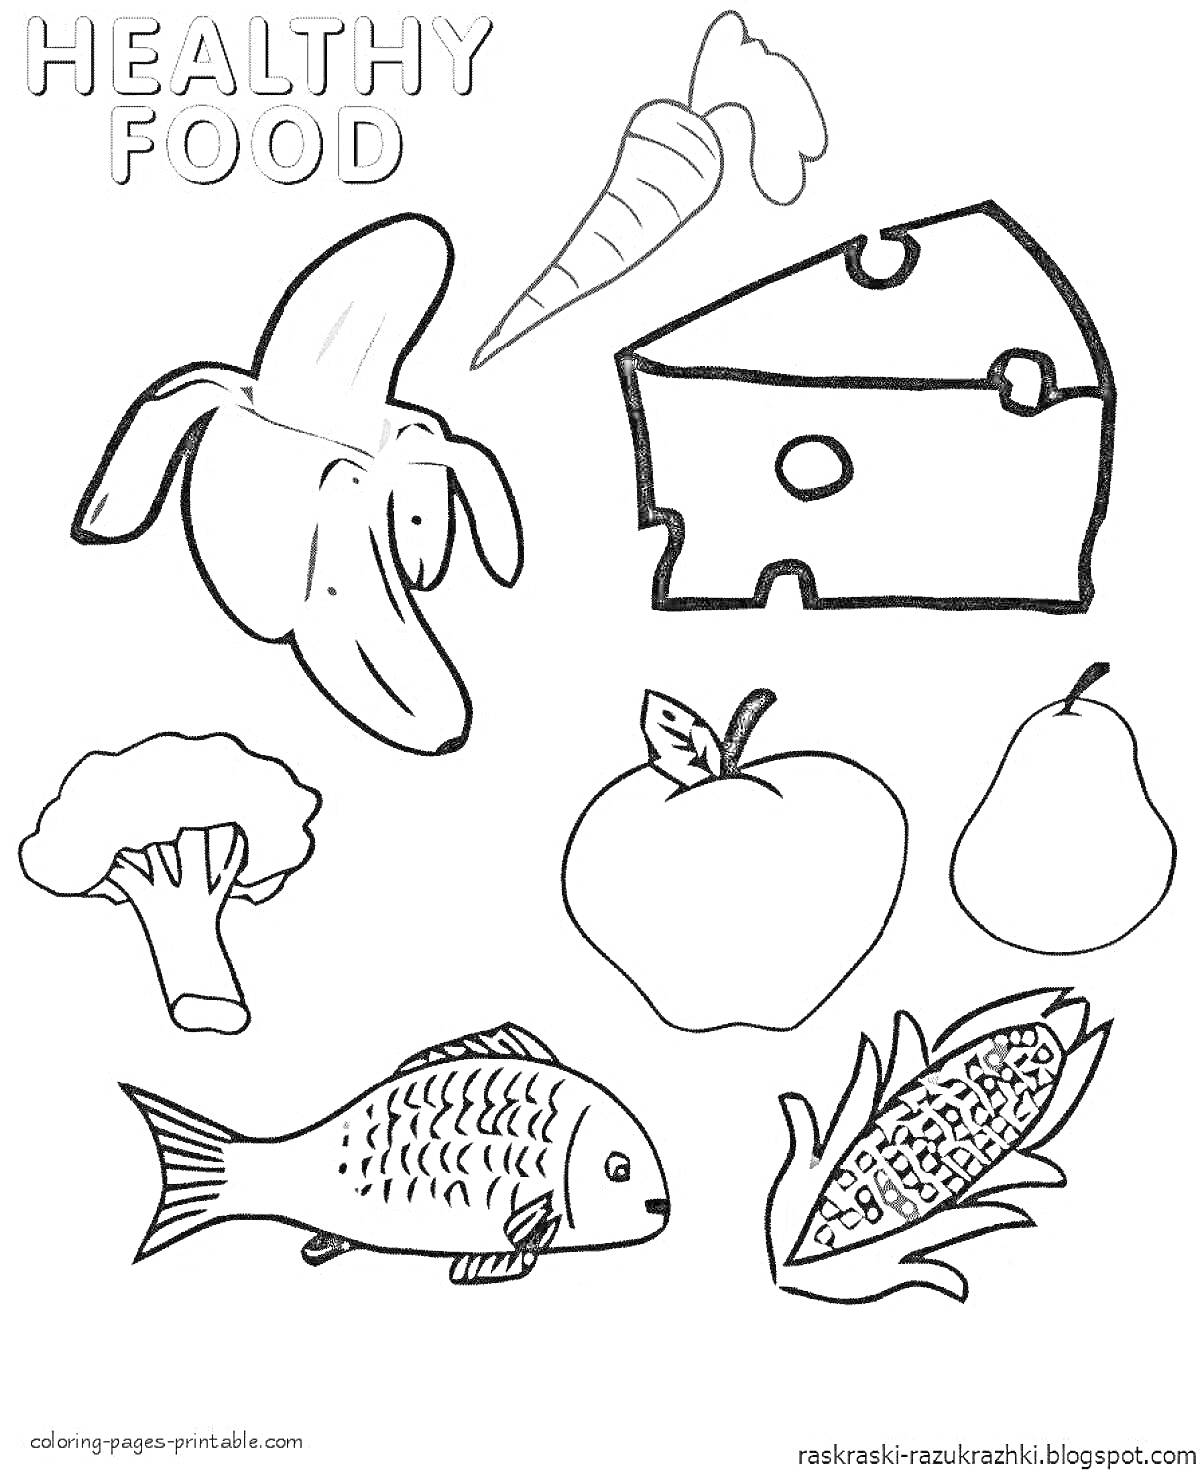 На раскраске изображено: Здоровое питание, Фрукты, Овощи, Сыр, Рыба, Банан, Морковь, Брокколи, Яблоко, Кукуруза, Груши